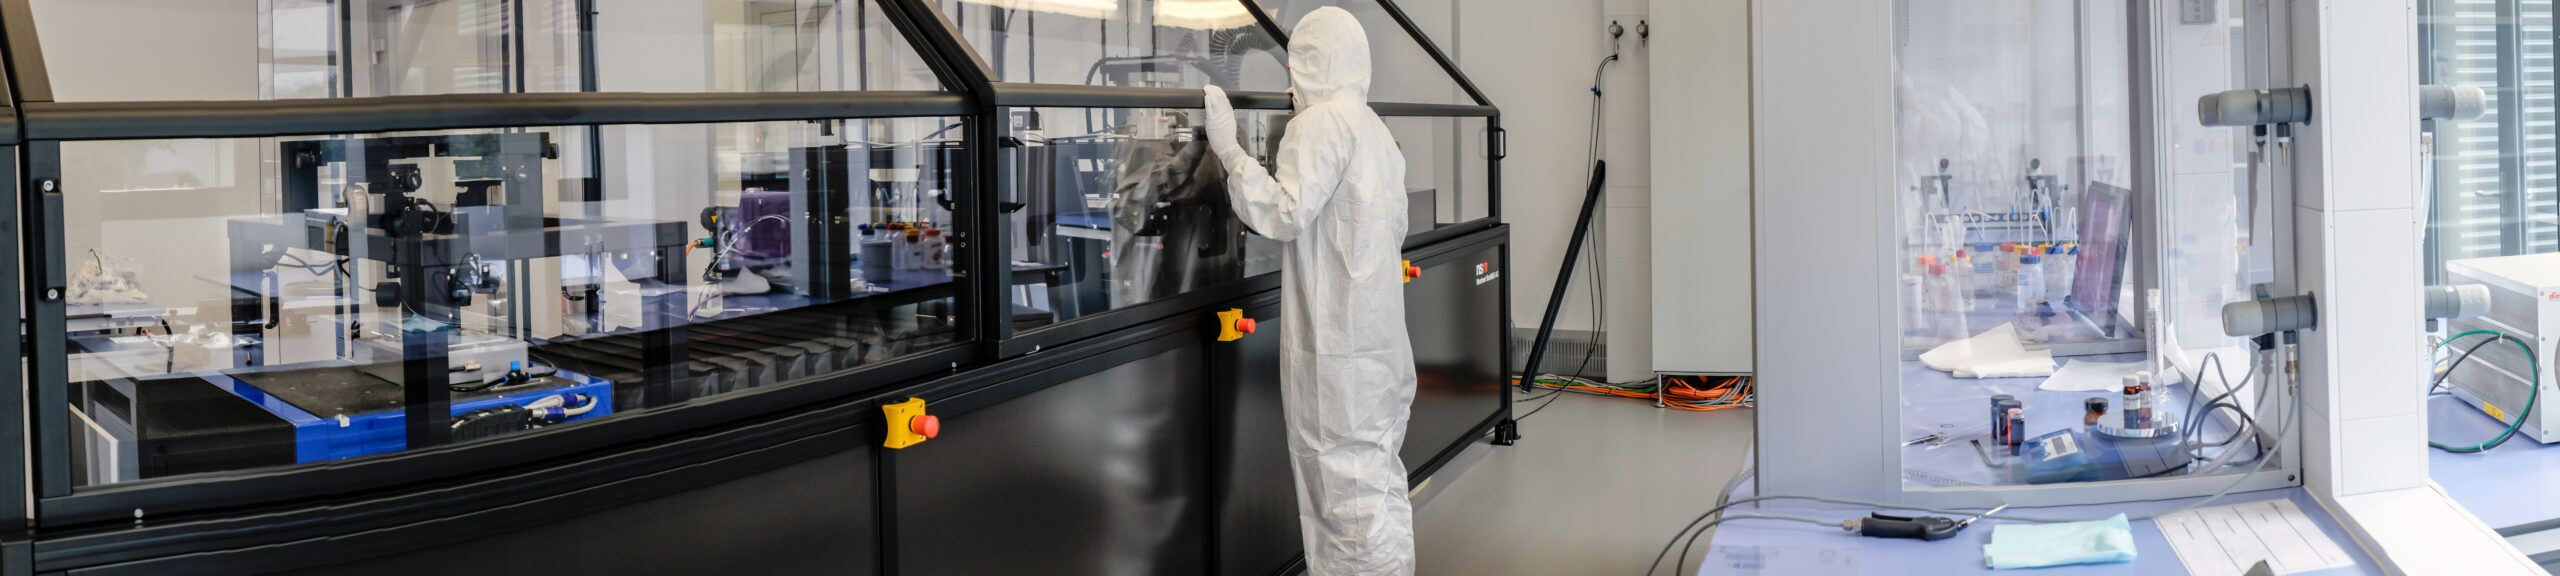 I ricercatori del Laboratorio Federale Svizzero per la Scienza e la Tecnologia dei Materiali utilizzano apparecchiature di stampa altamente specializzate per applicare al substrato degli esperimenti, ad esempio carta o film di PET, particelle disperse in inchiostri (Foto: EMPA)